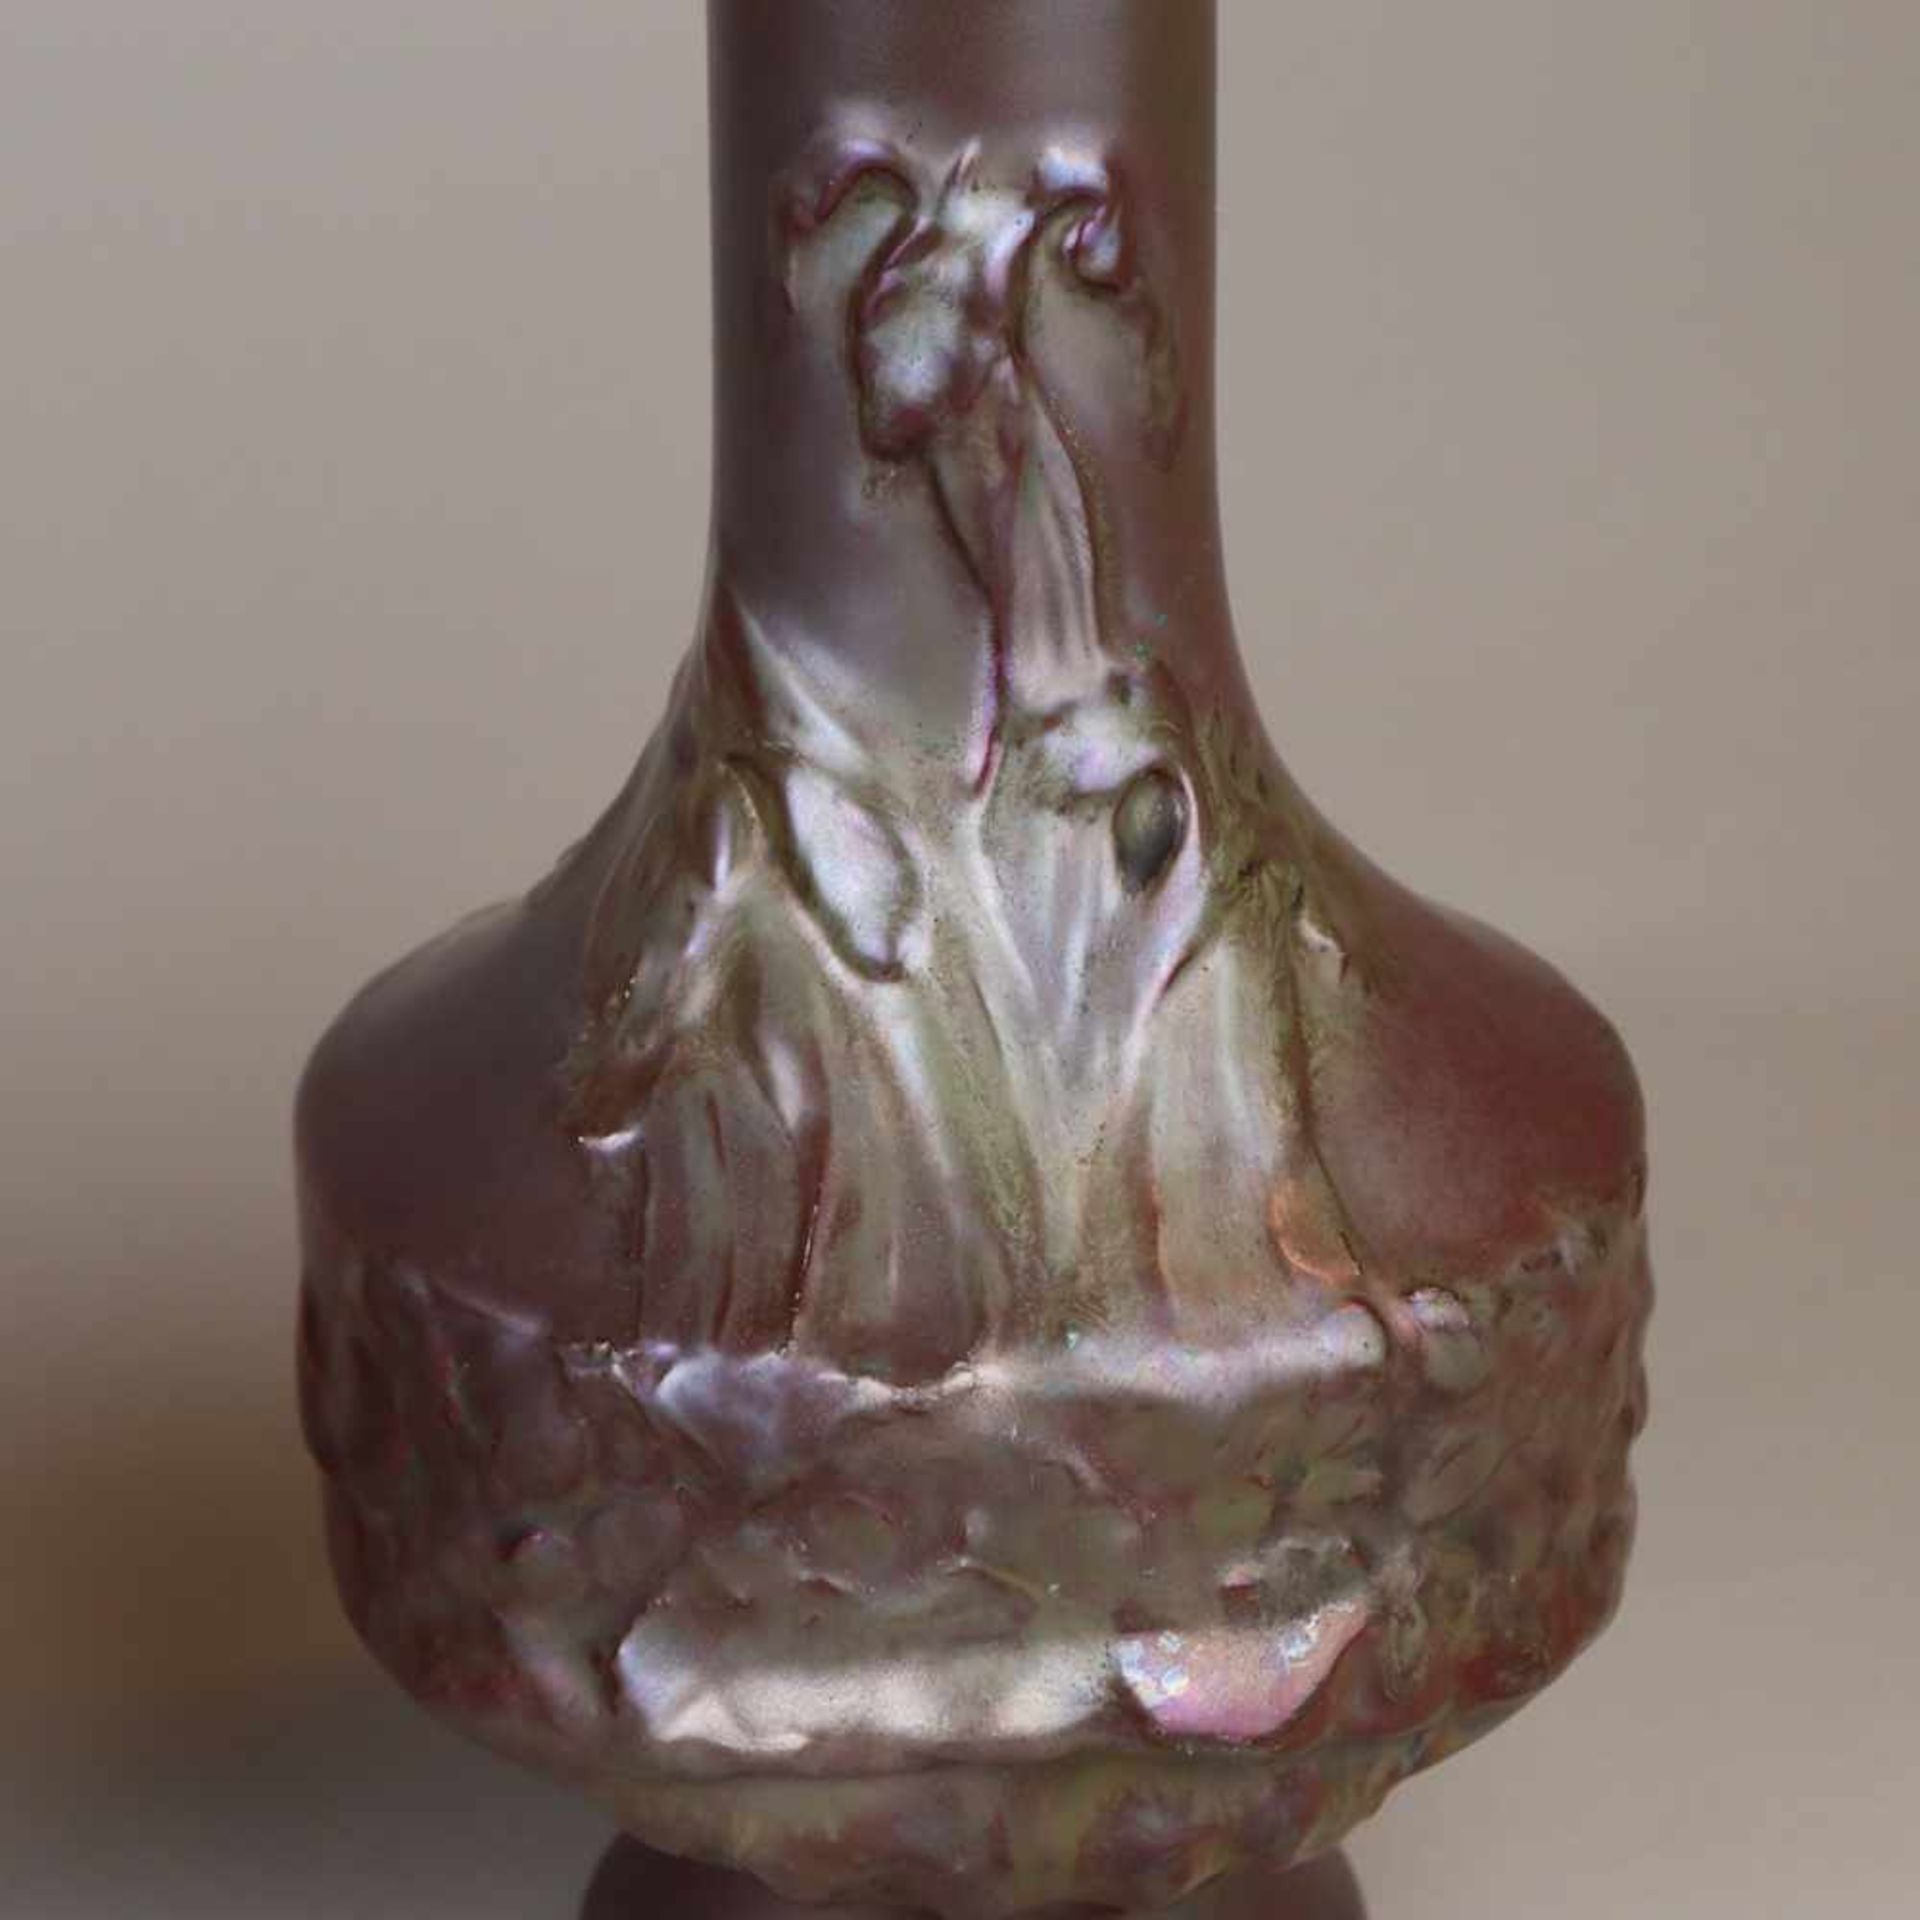 Paar Jugendstil-Vasen - Keramik, violett glasiert, irisiert, floraler Reliefdekor, an der Bodenseite - Bild 5 aus 6